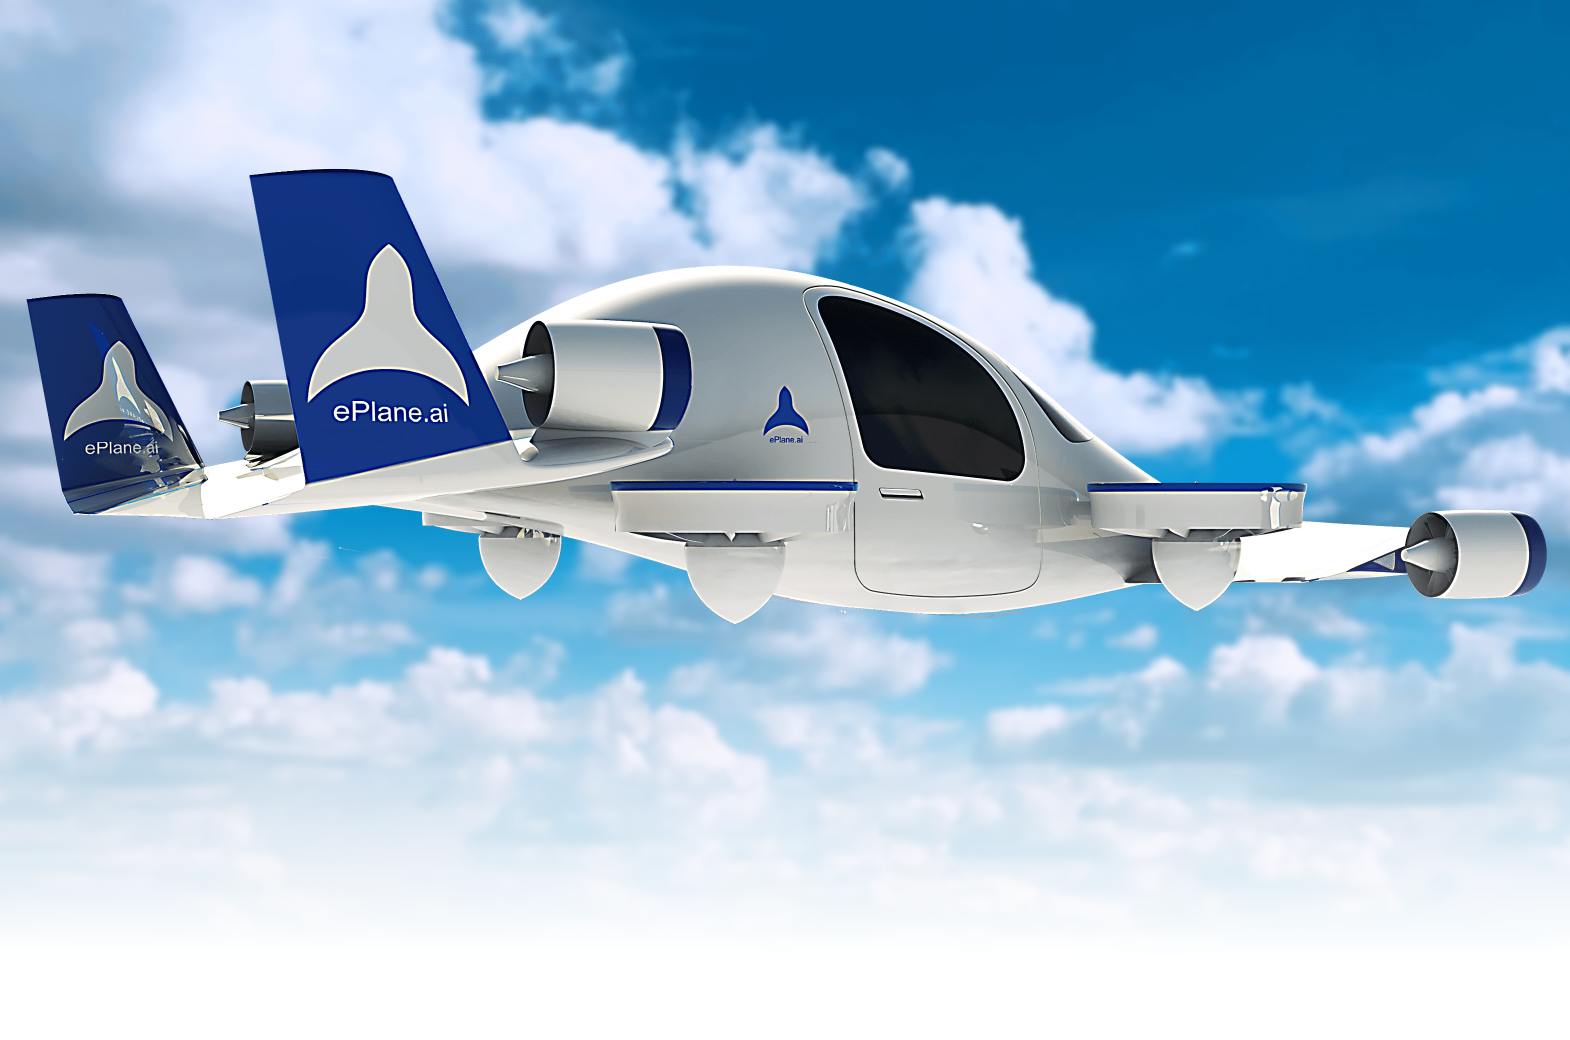 Założyciel ePlane powiedział, że firma planuje wypuścić pierwszy prototyp powietrznej taksówki do końca 2024 roku i rozpocząć komercjalizację na pełną skalę w Indiach w 2027 roku